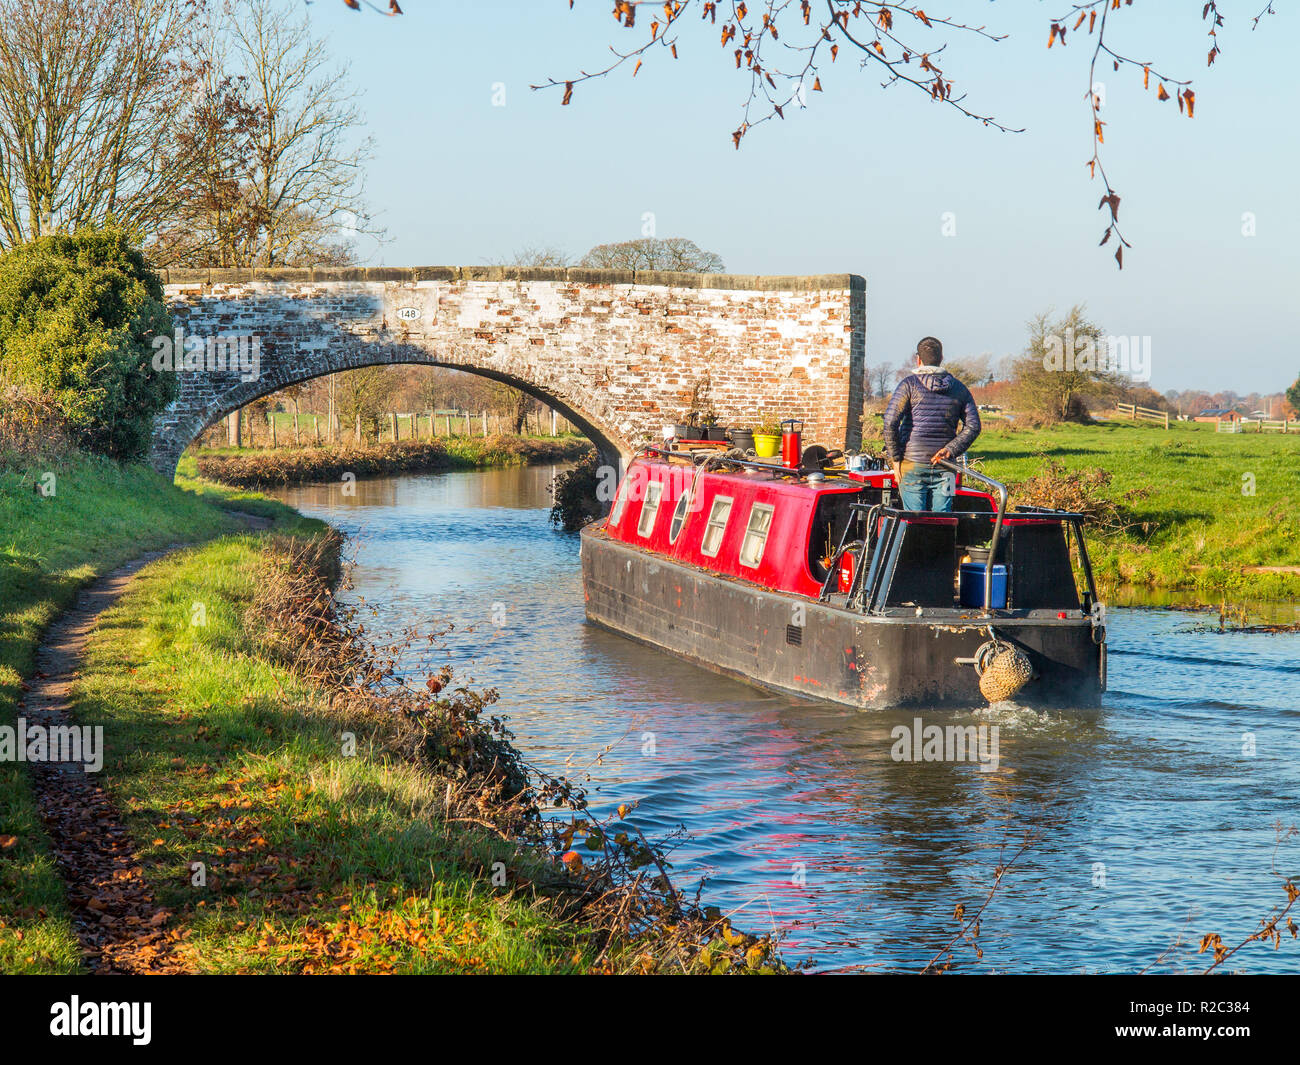 Homme conduisant un bateau narrowboat le long de la voie navigable du canal Trent et Mersey dans la campagne à Hassall Green dans le Cheshire Angleterre Royaume-Uni Banque D'Images